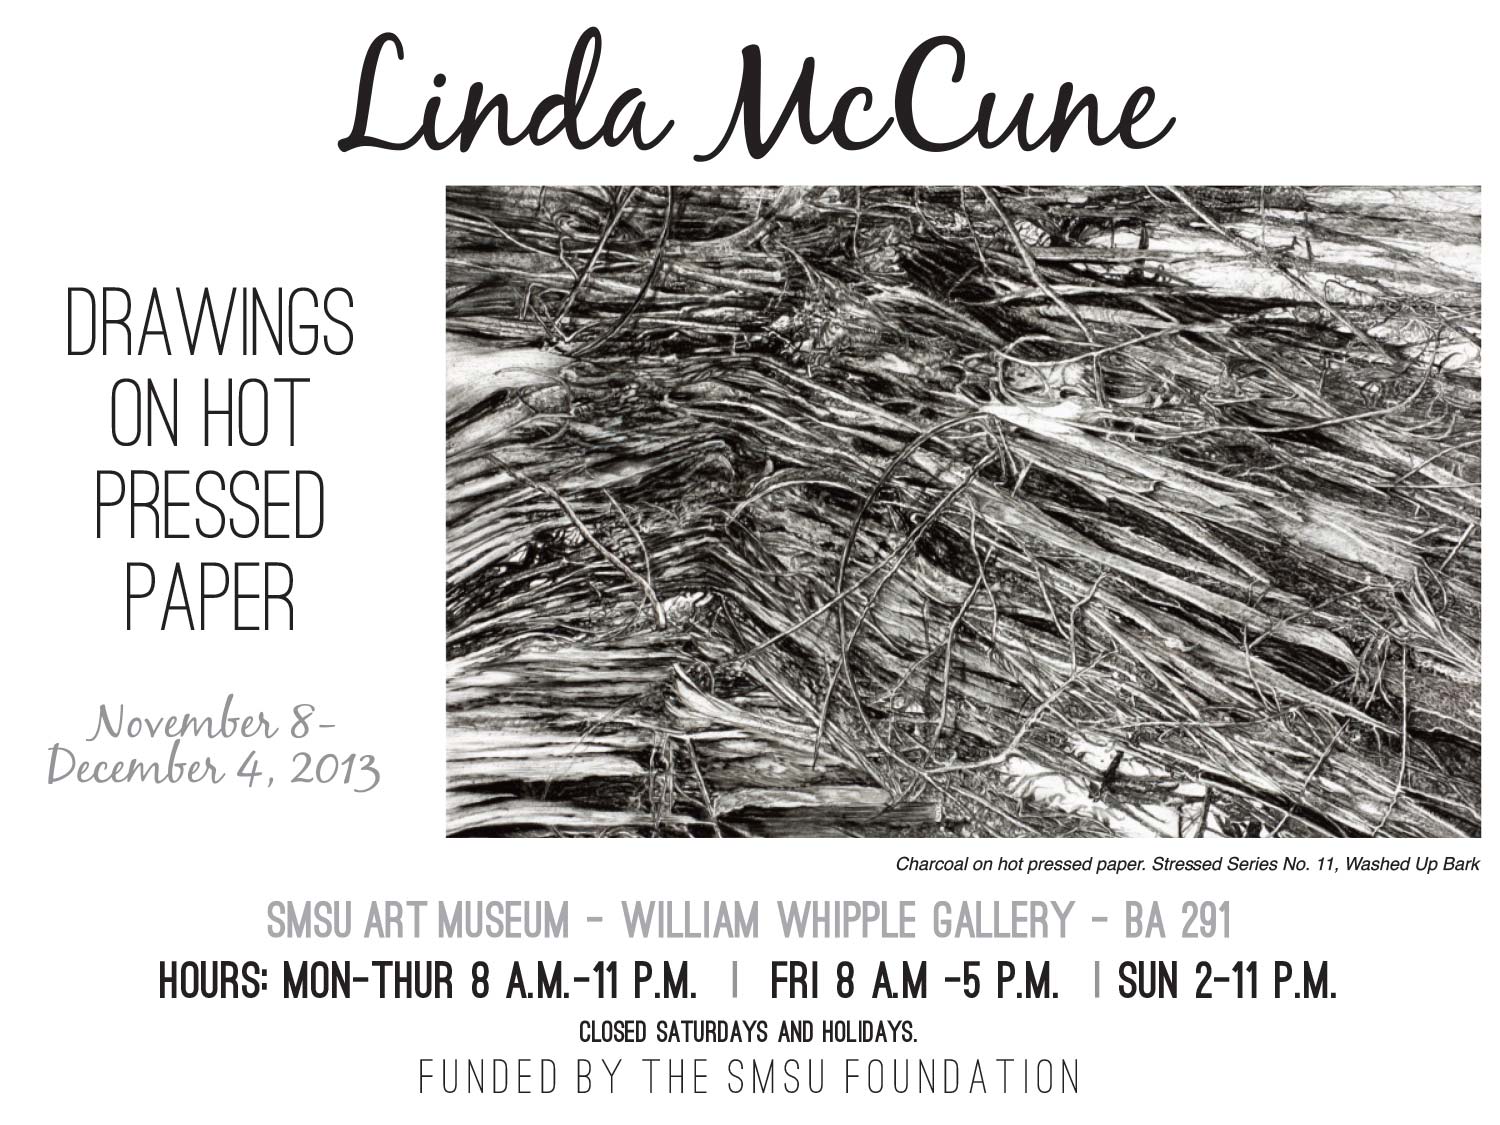 Linda McCune Exhibit Image